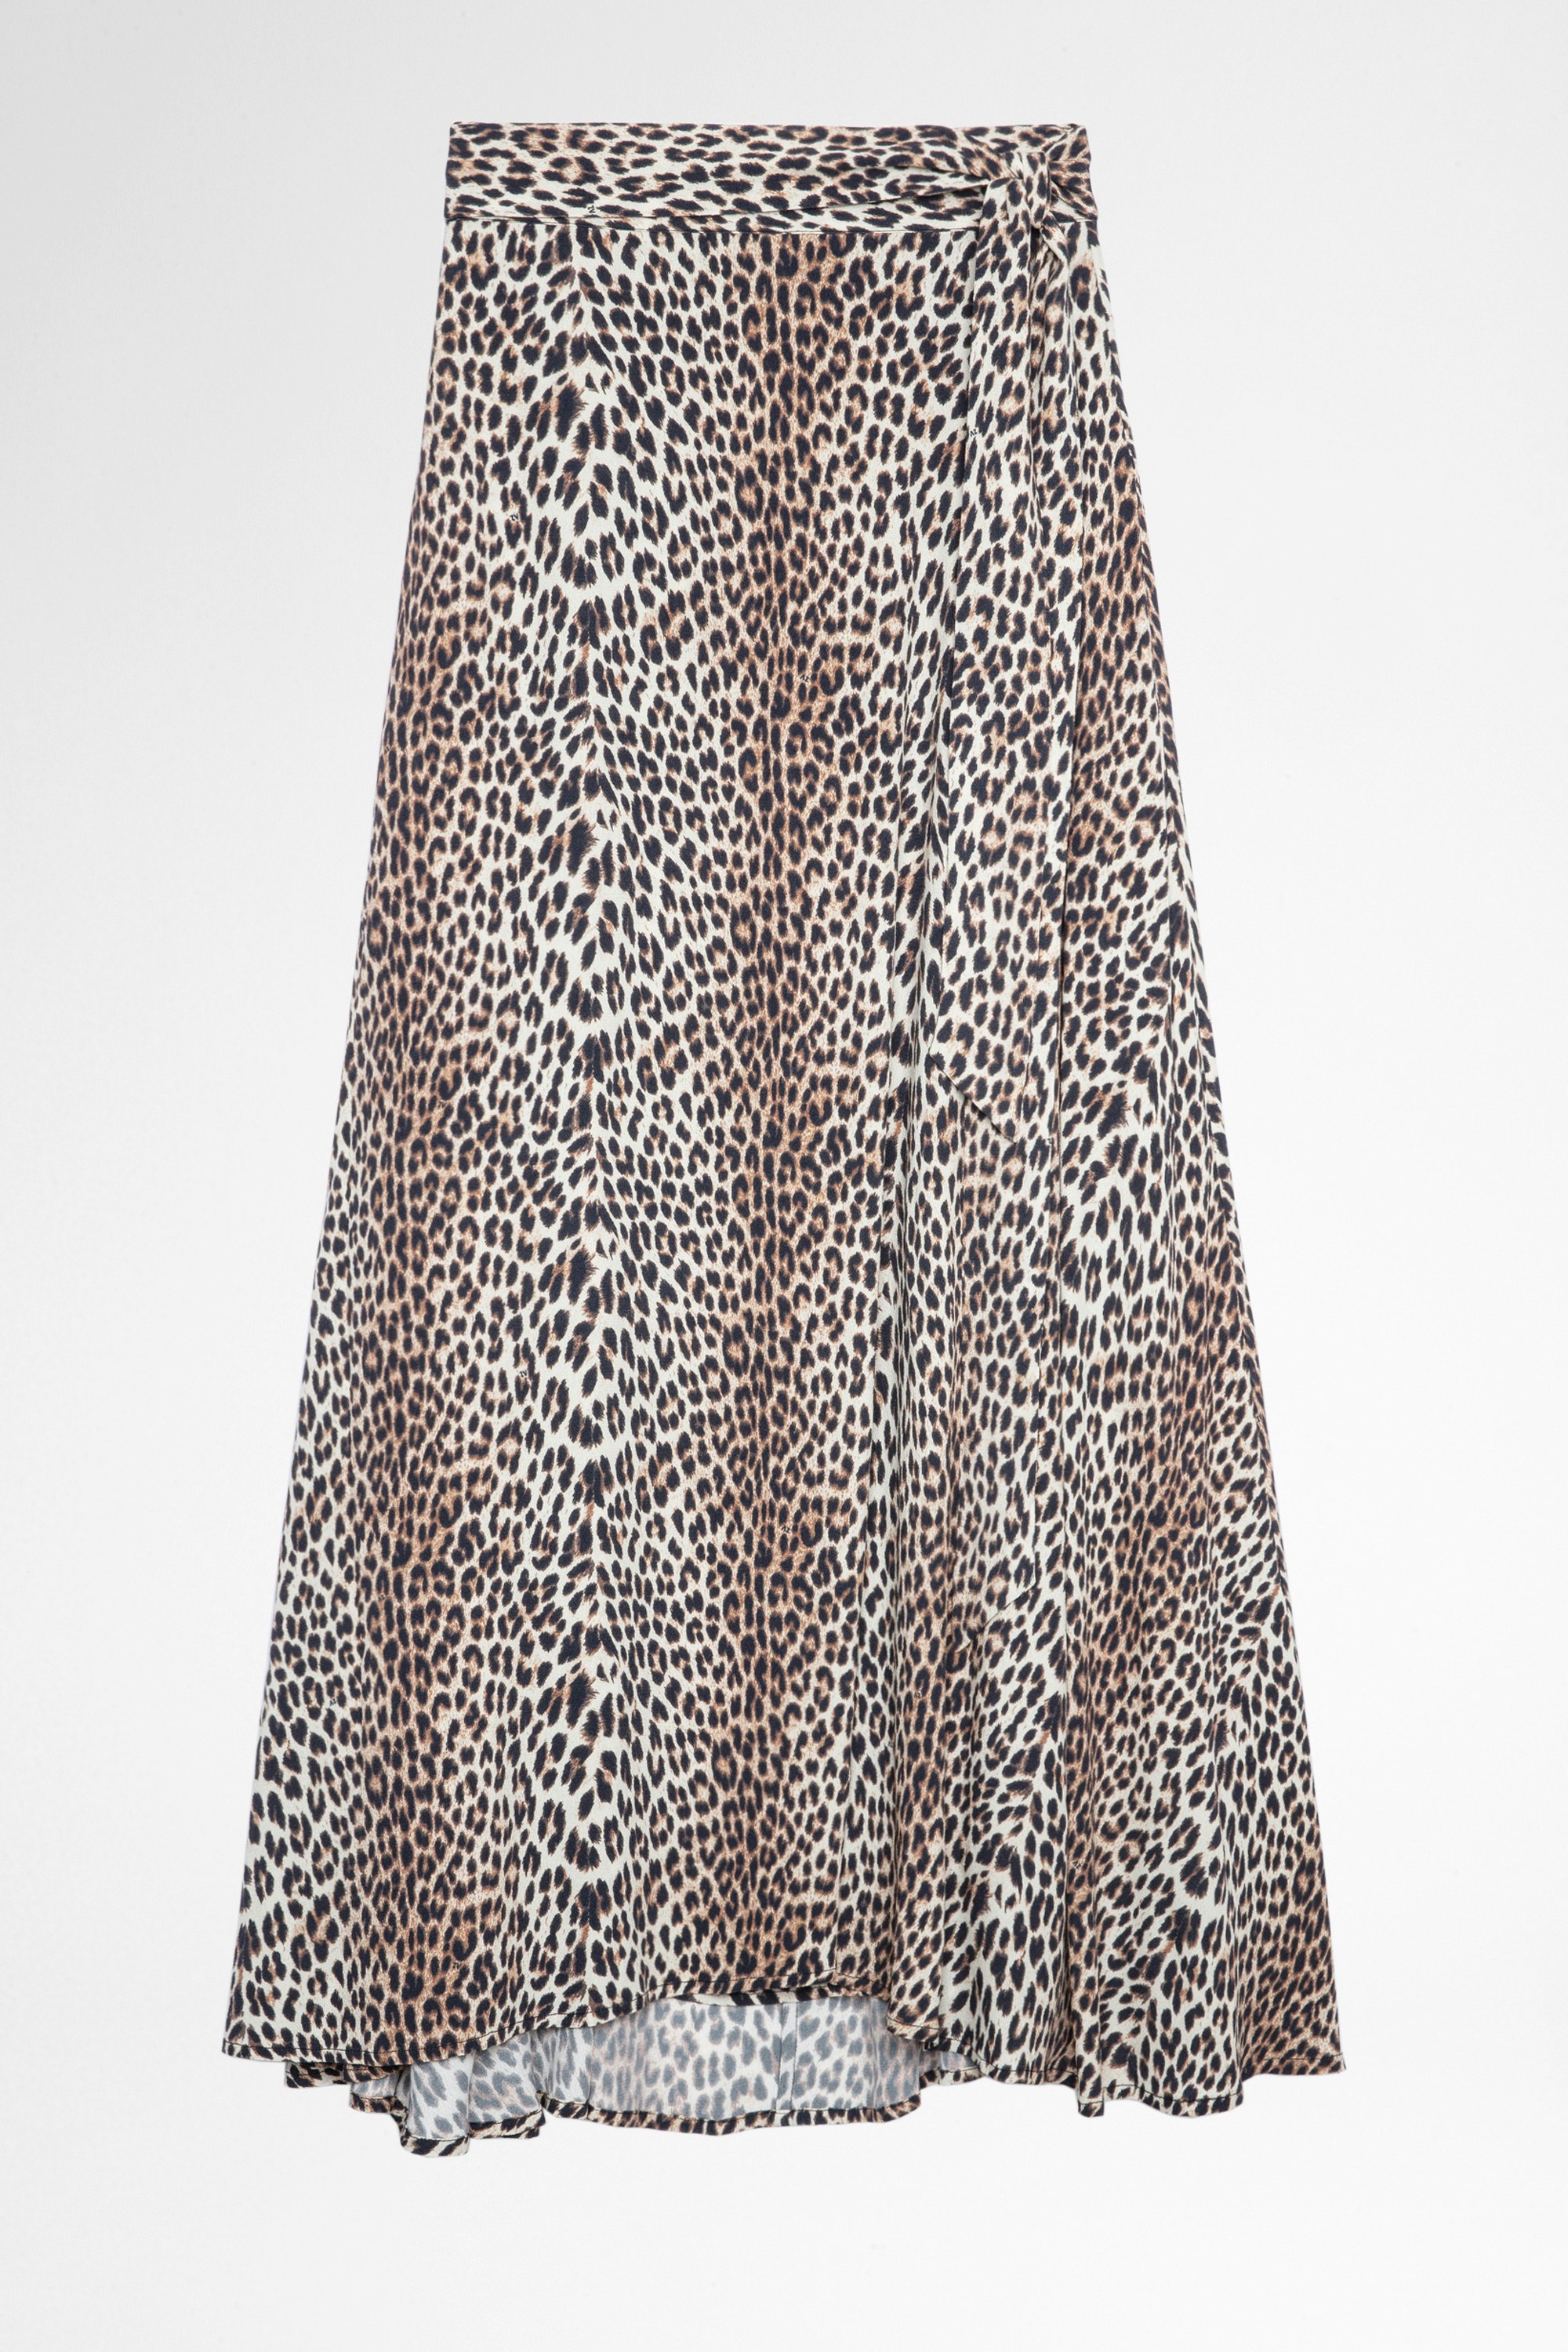 Johan Leopard Skirt Women’s leopard-print maxi skirt